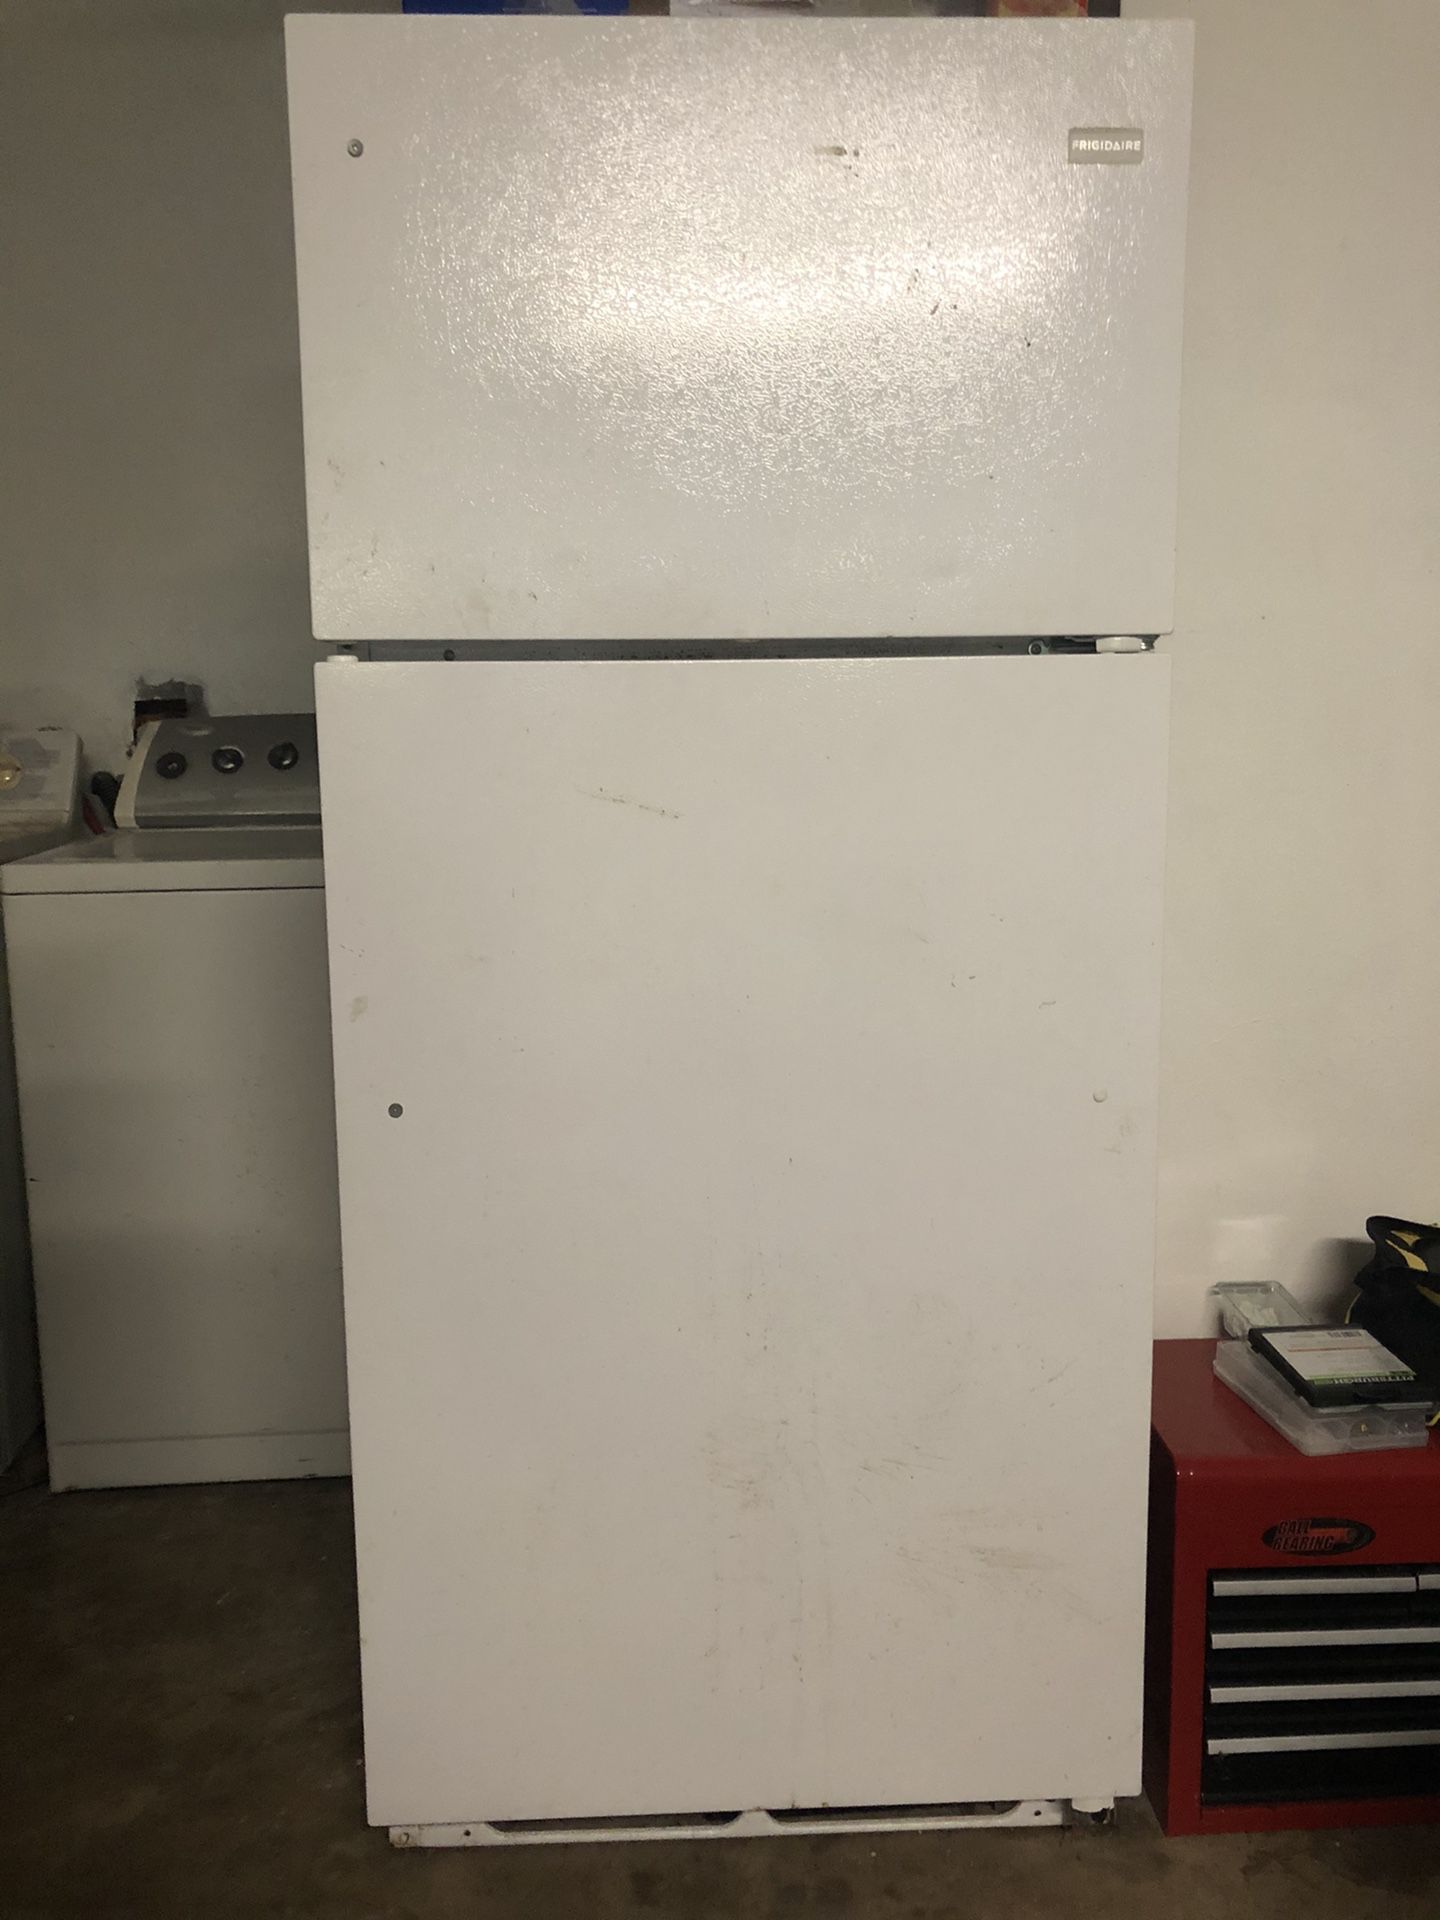 Frigidaire refrigerator and freezer